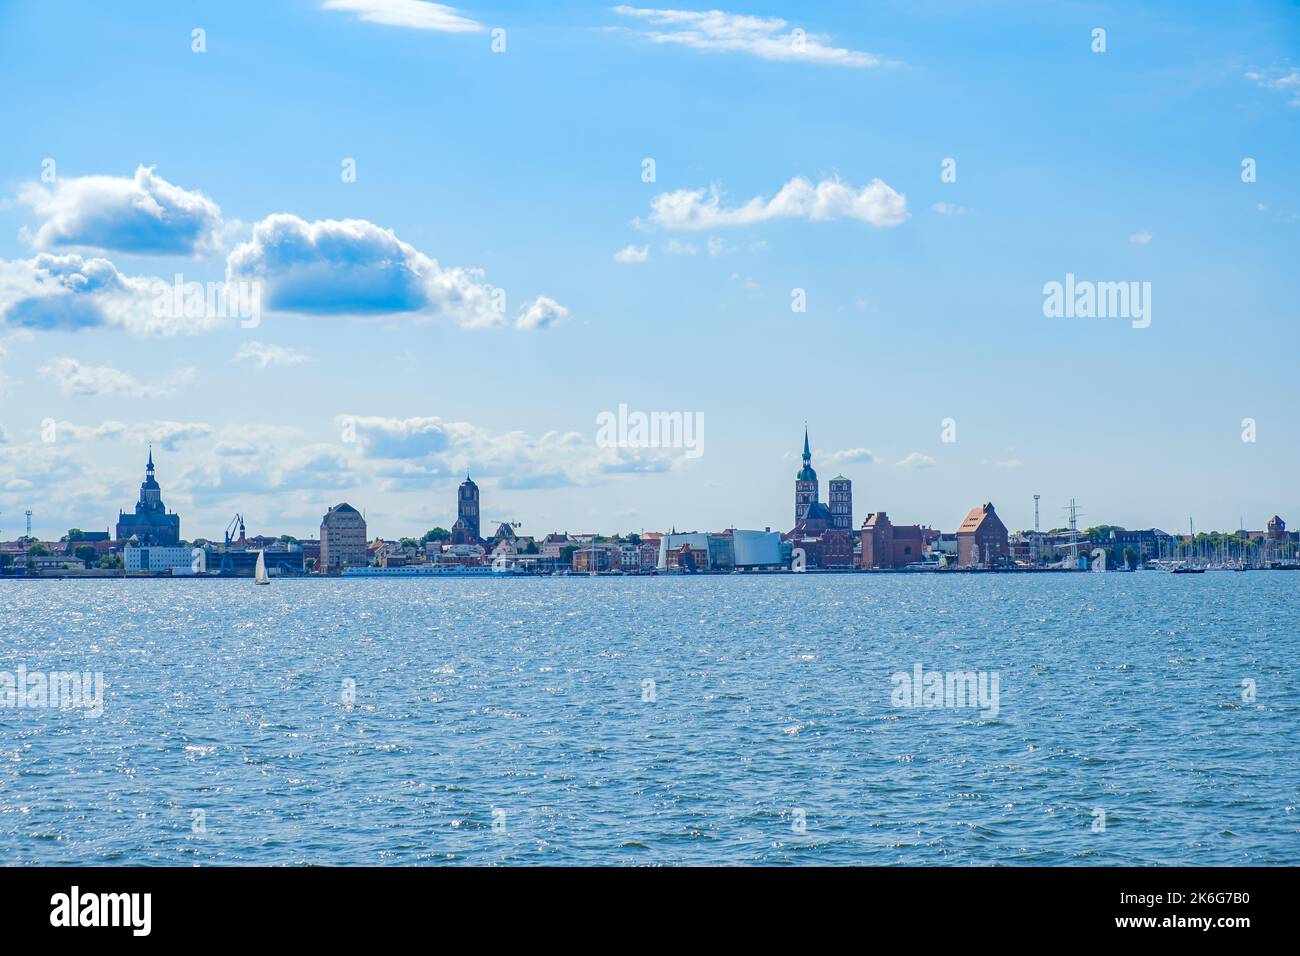 Vue sur le bord de mer depuis le détroit de Strela sur la toile de fond de la ville et le port de la ville hanséatique de Stralsund, Mecklembourg-Poméranie occidentale, Allemagne. Banque D'Images